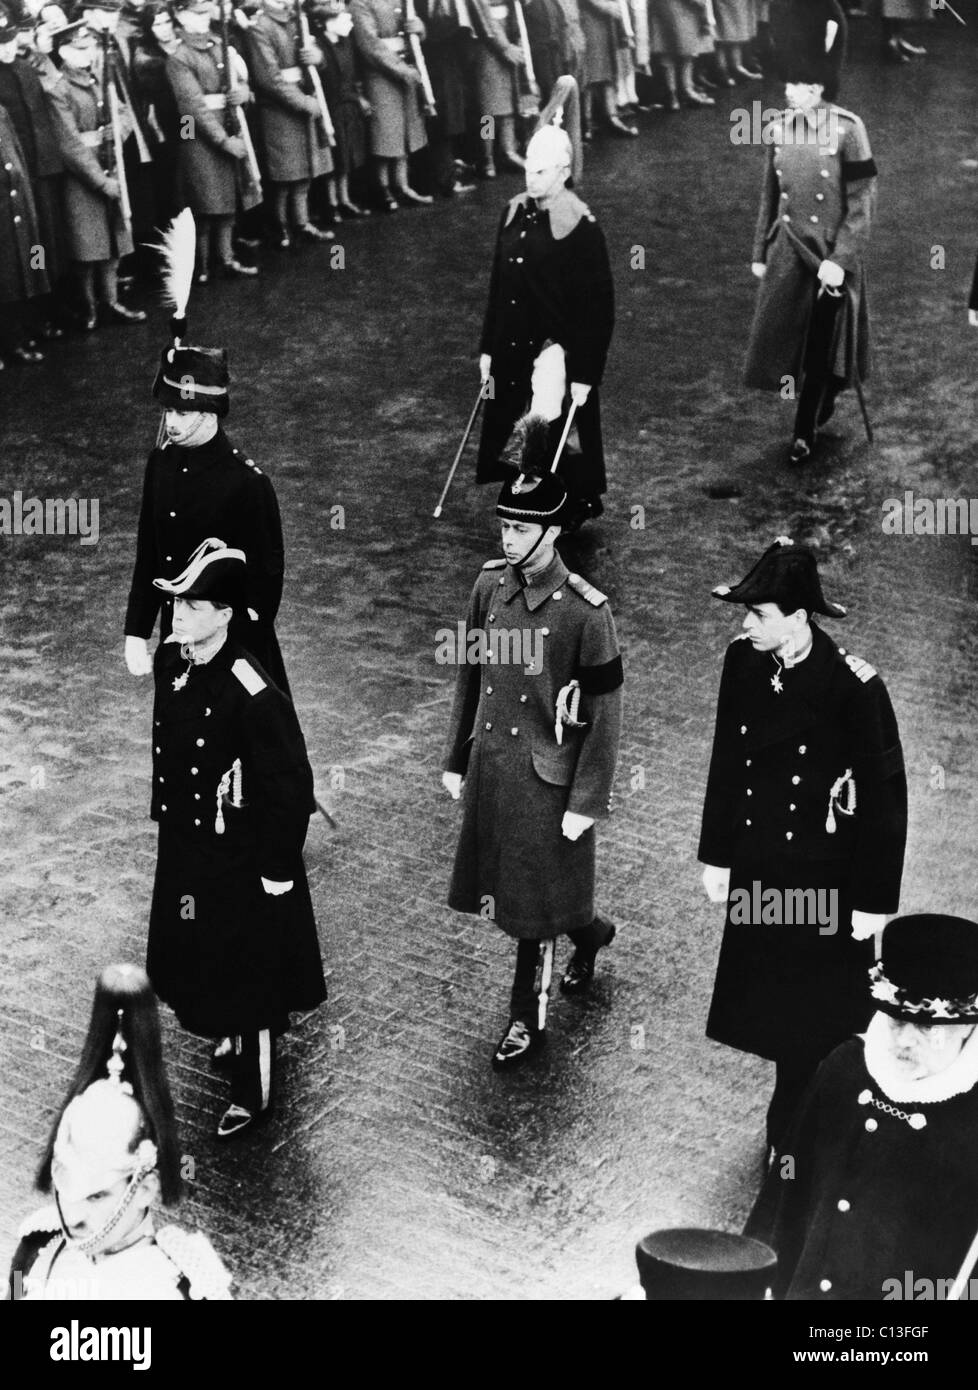 La famille royale britannique. Centre, à partir de la gauche : le Prince Henry, duc de Gloucester (le roi Édouard VIII (futur duc de Windsor), Prince George, duc de Kent et le Prince Albert, duc de York (futur roi britannique George VI), à la procession funéraire du roi George V, Londres, Angleterre, le 23 janvier 1936. Banque D'Images